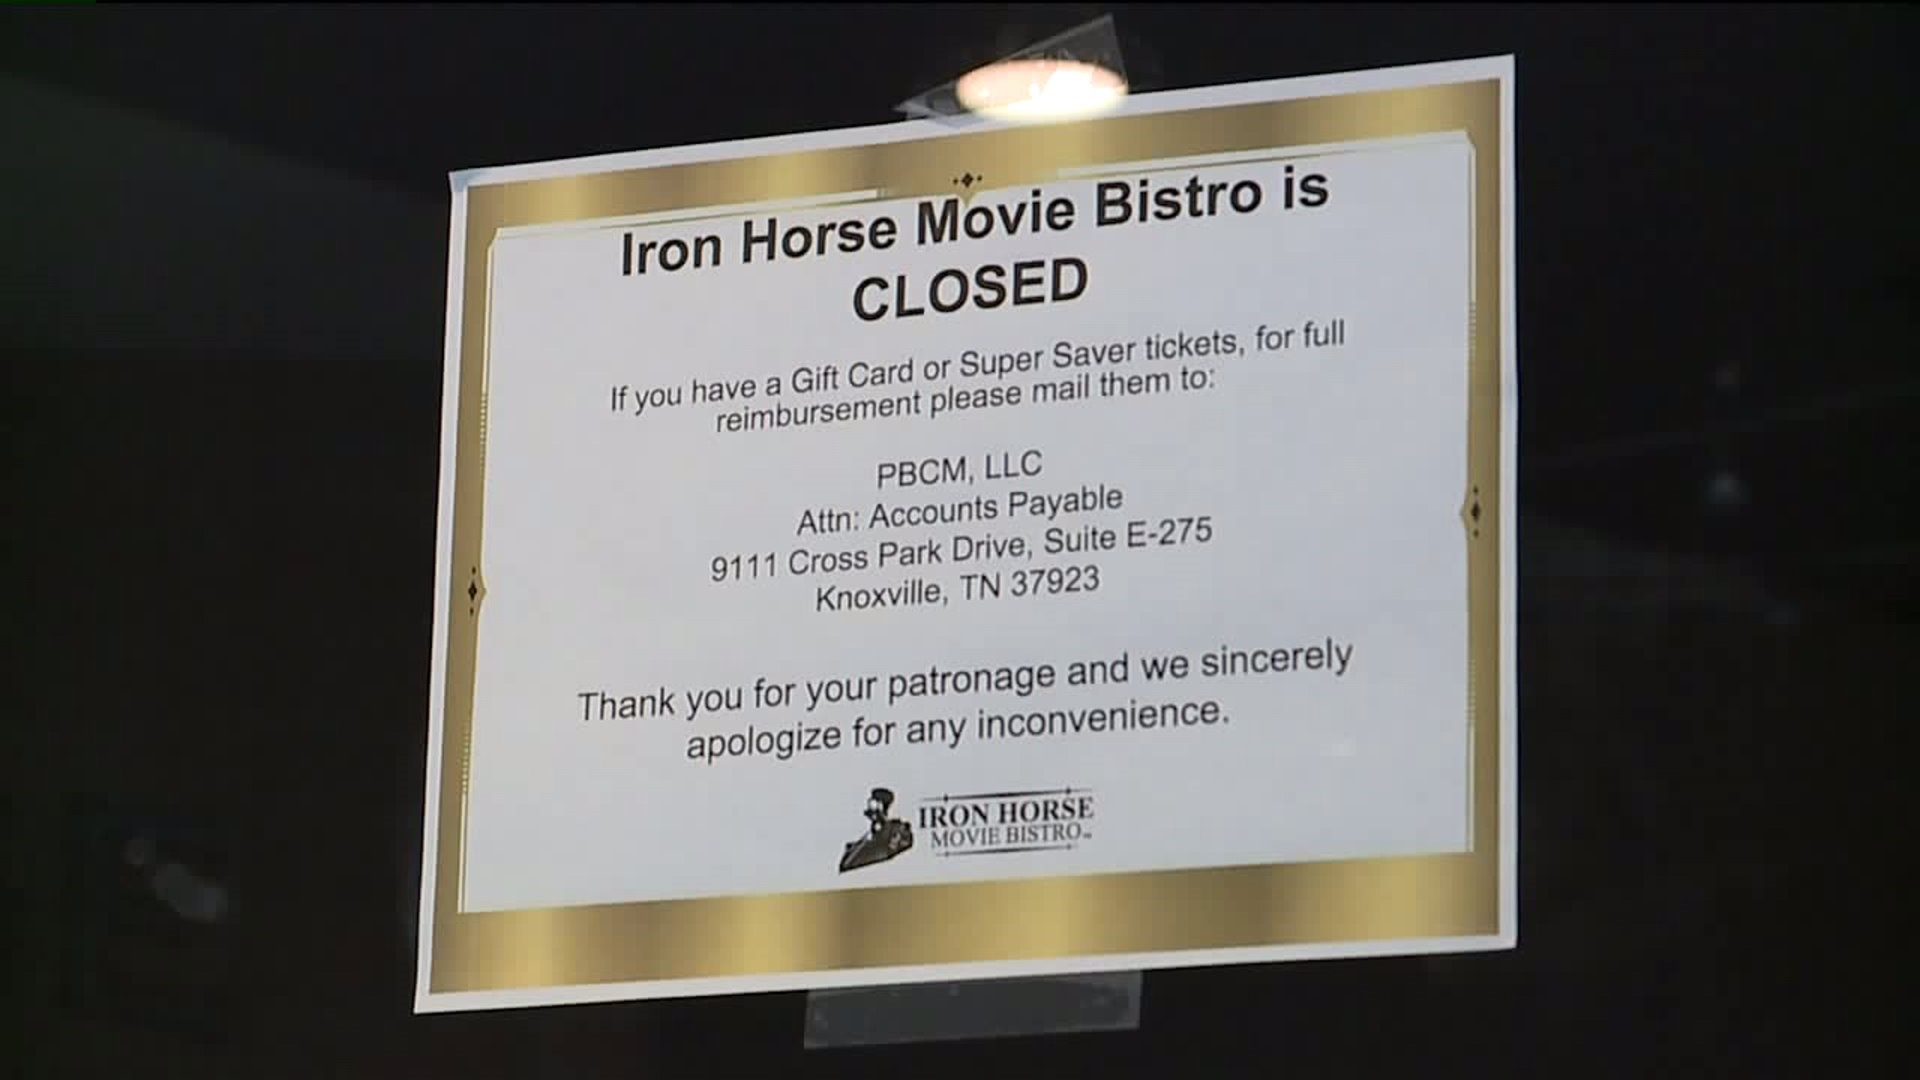 Iron Horse Movie Bistro Closed until New Management Found